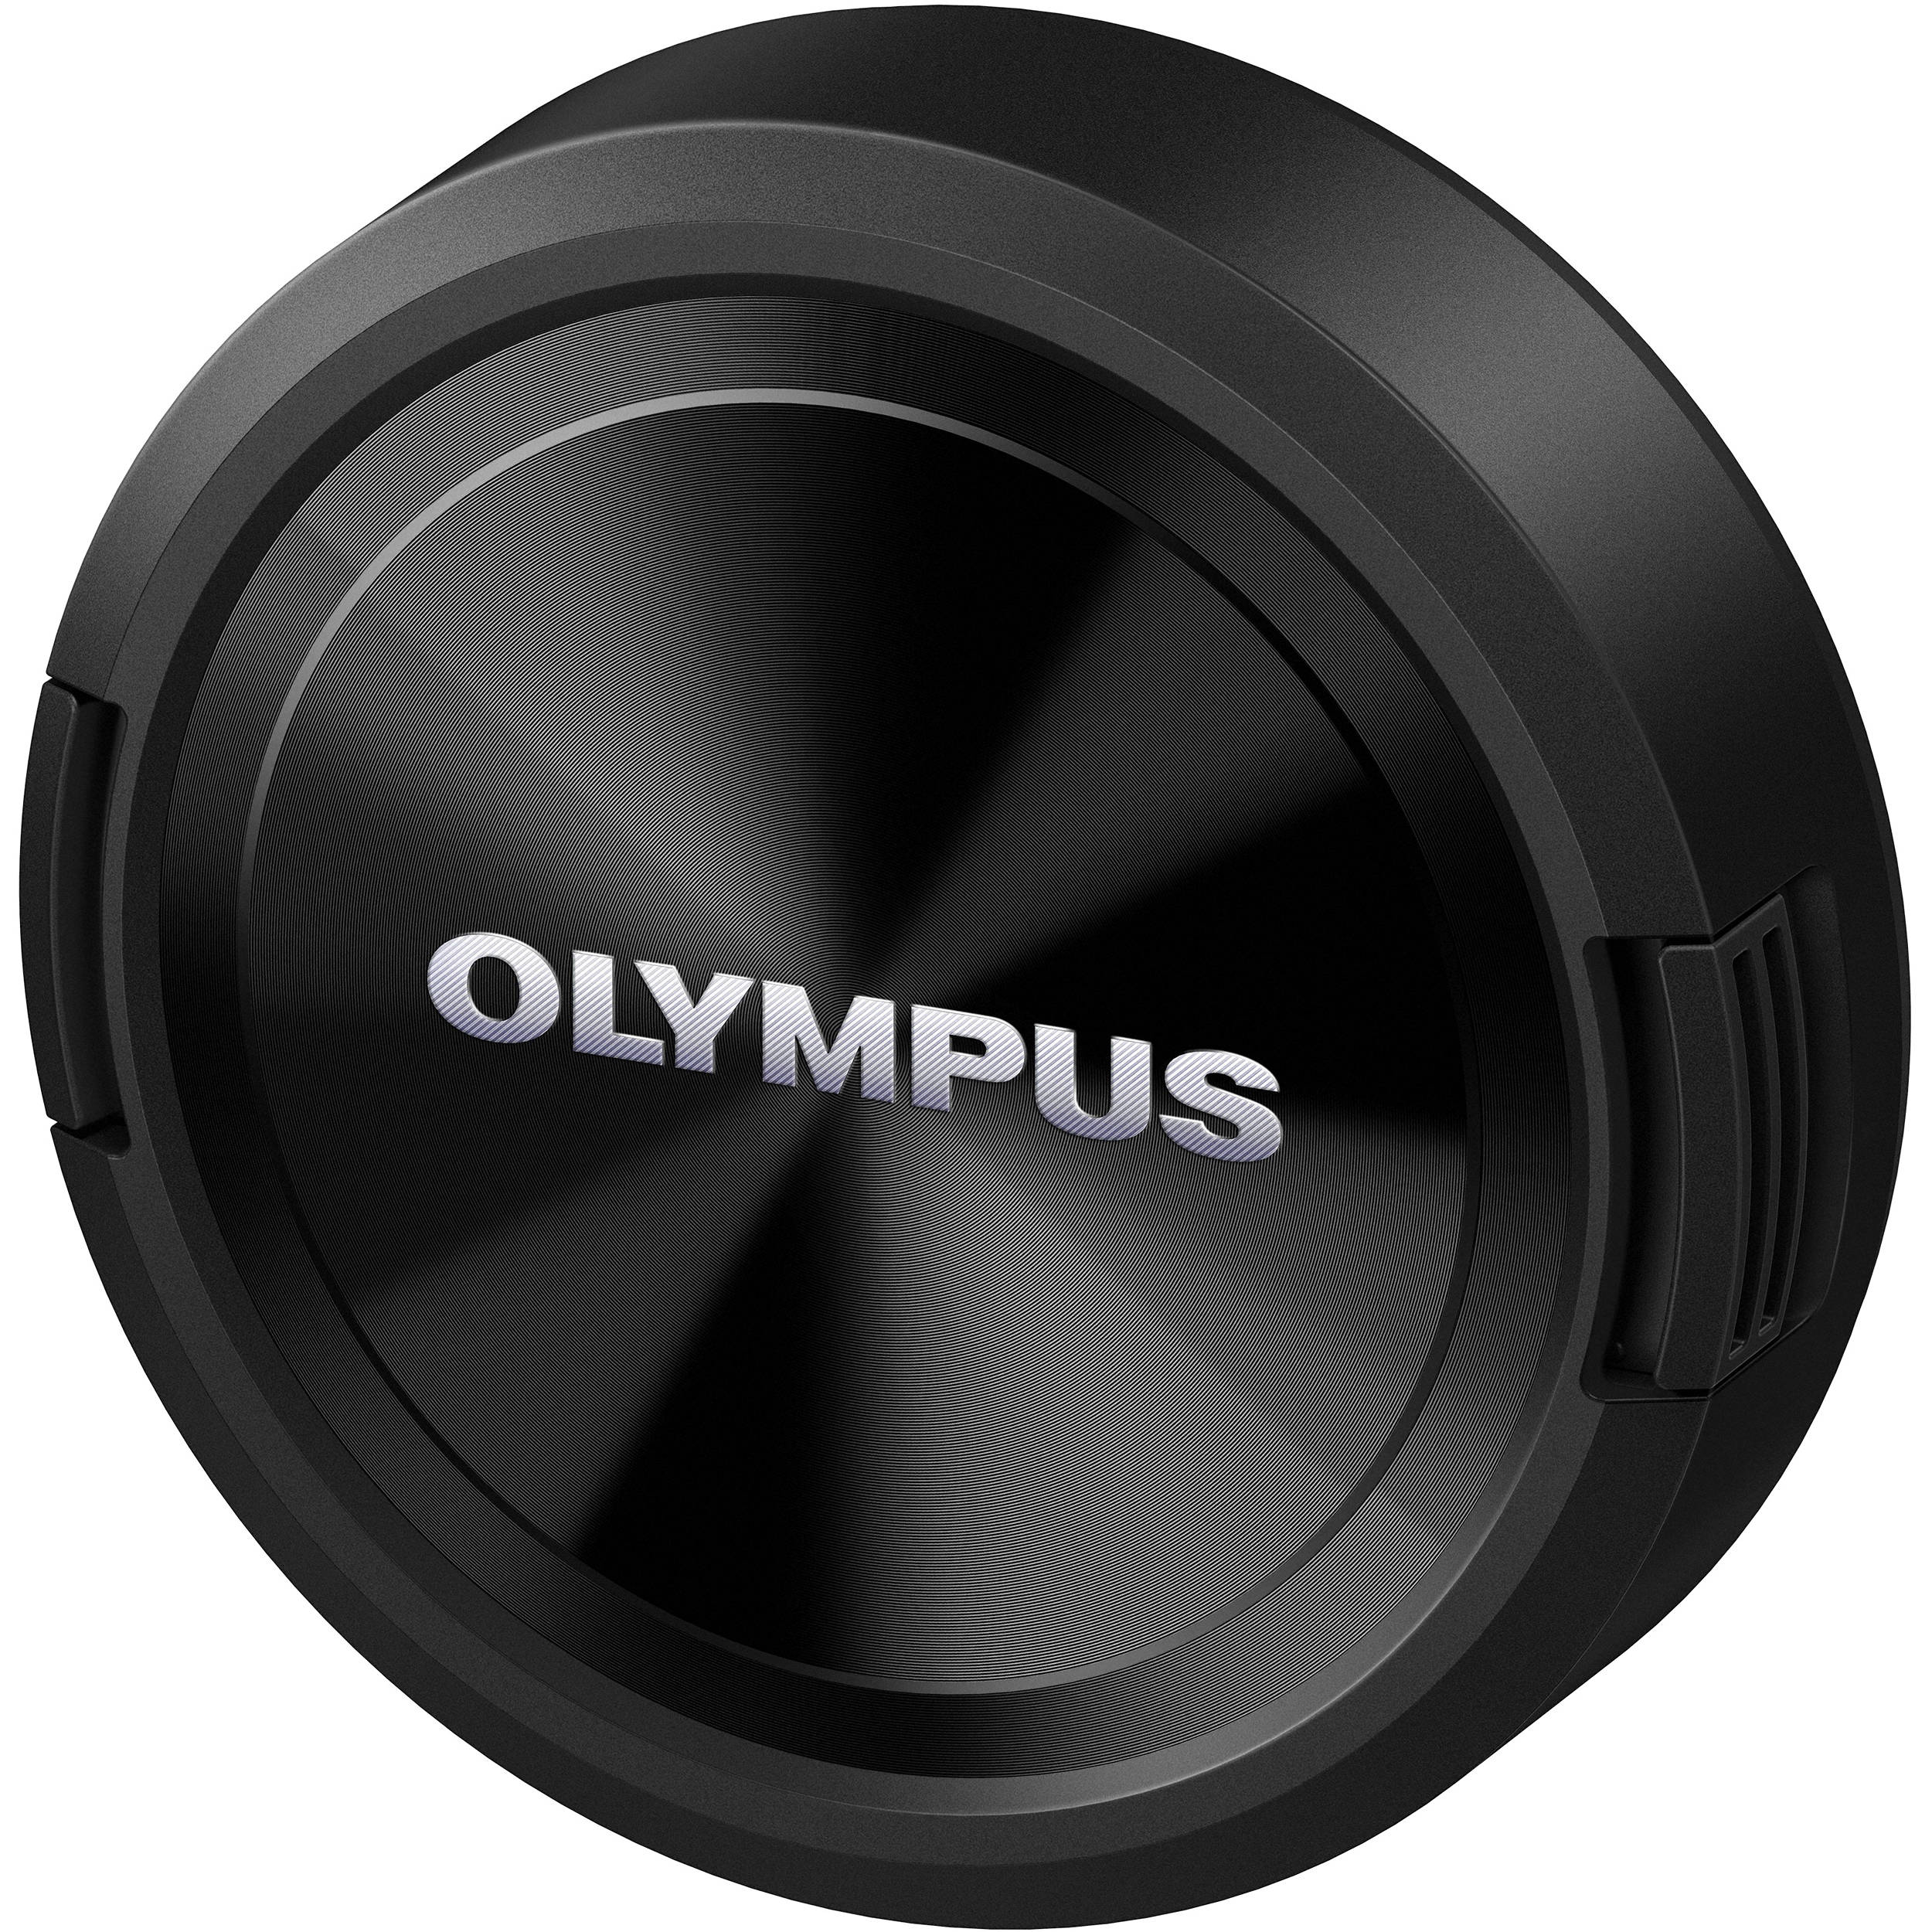 Olympus M Zuiko Digital Ed 7 14mm F 2 8 Pro Lens V3130bu000